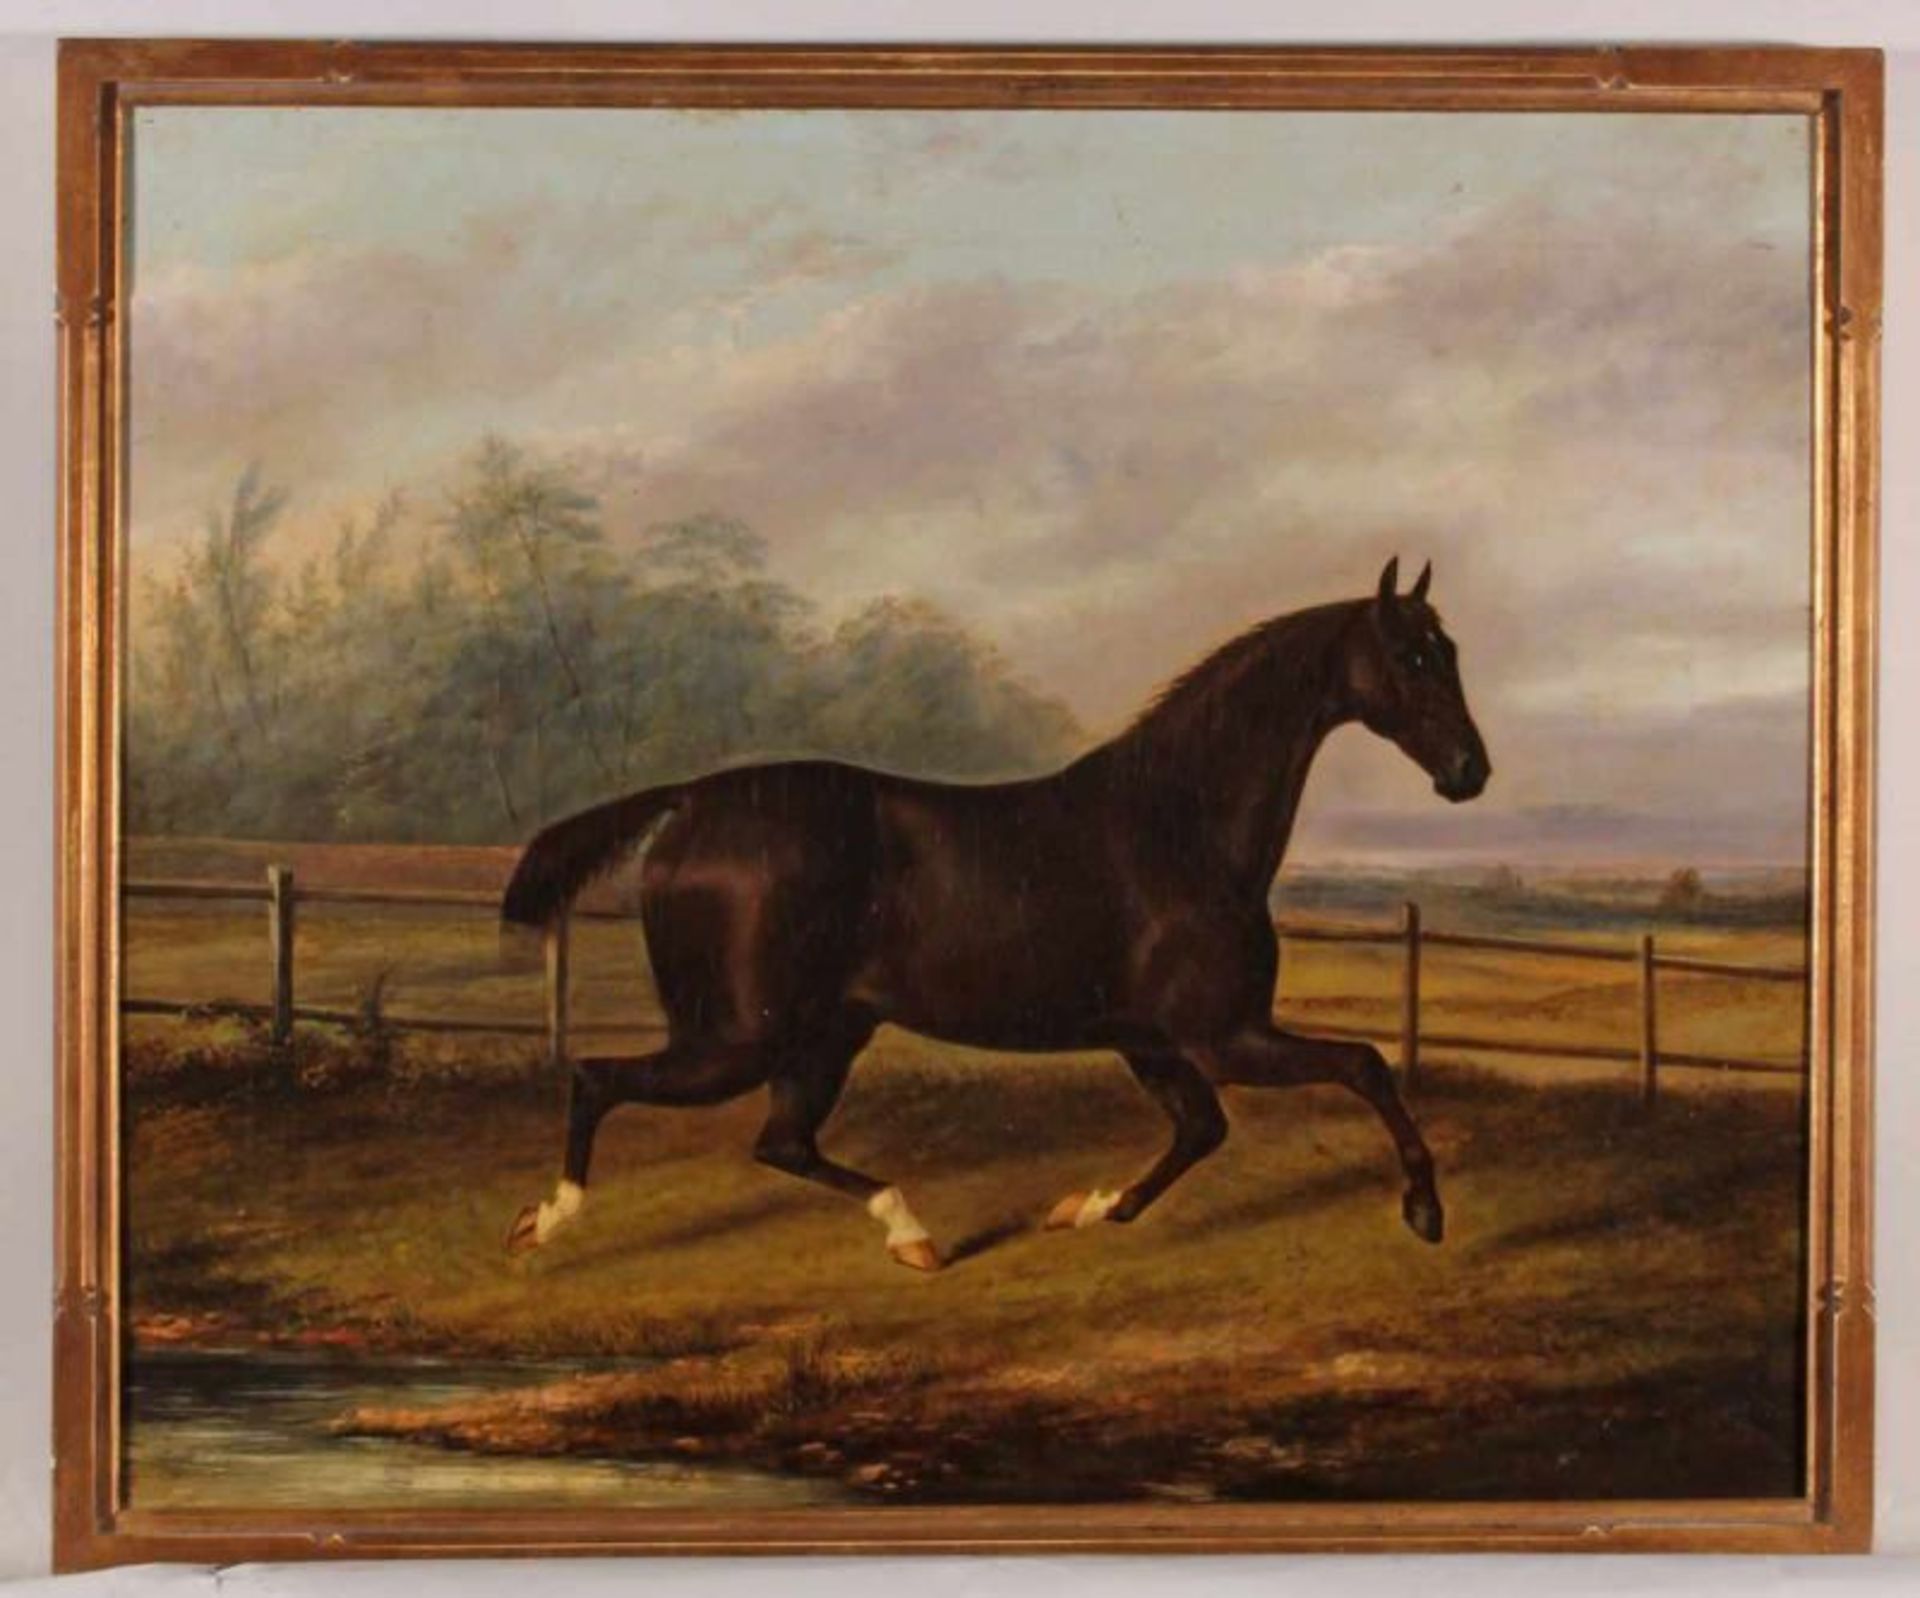 Clark, Albert (aktiv 1821 - 1910, Pferdemaler), "Rennpferd in Landschaft", Öl auf Leinwand, signiert - Image 2 of 5